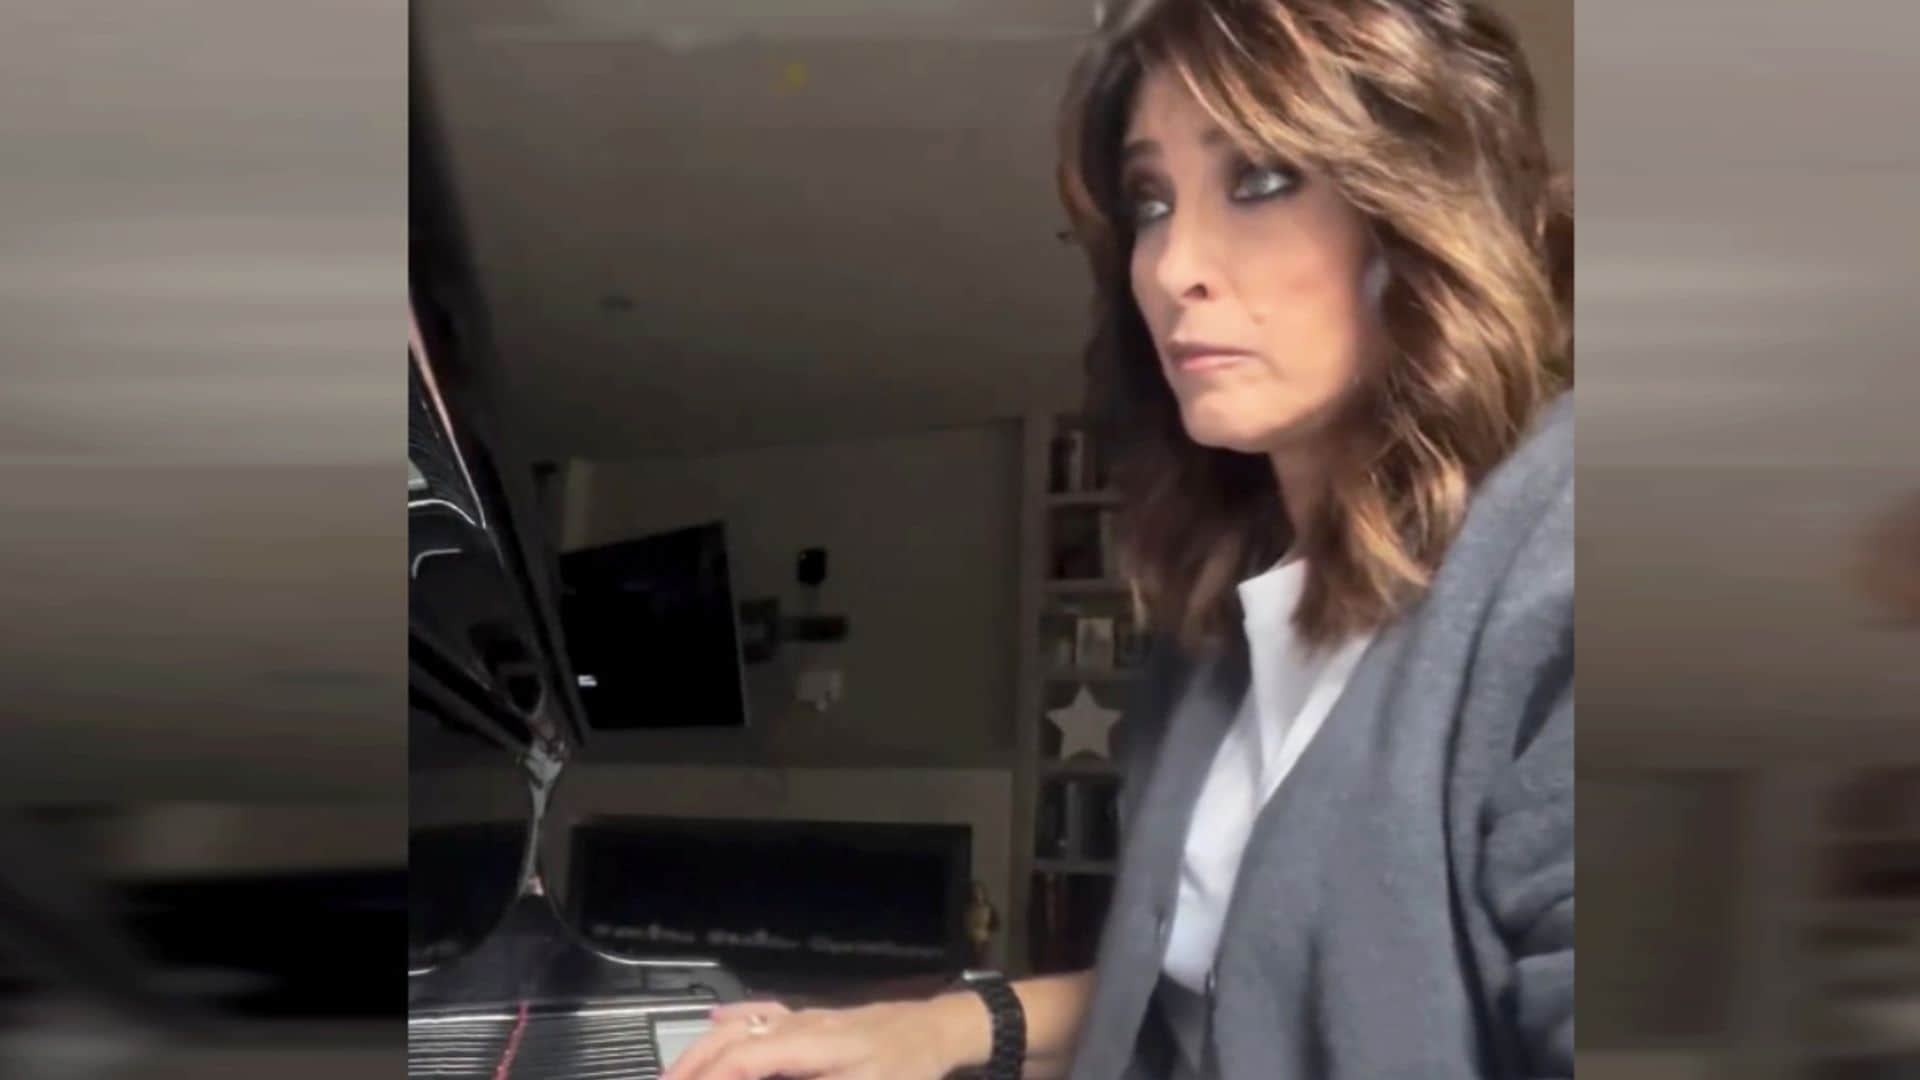 No te pierdas la faceta más desconocida de Helena Resano tocando el piano cuando se apagan las luces de plató